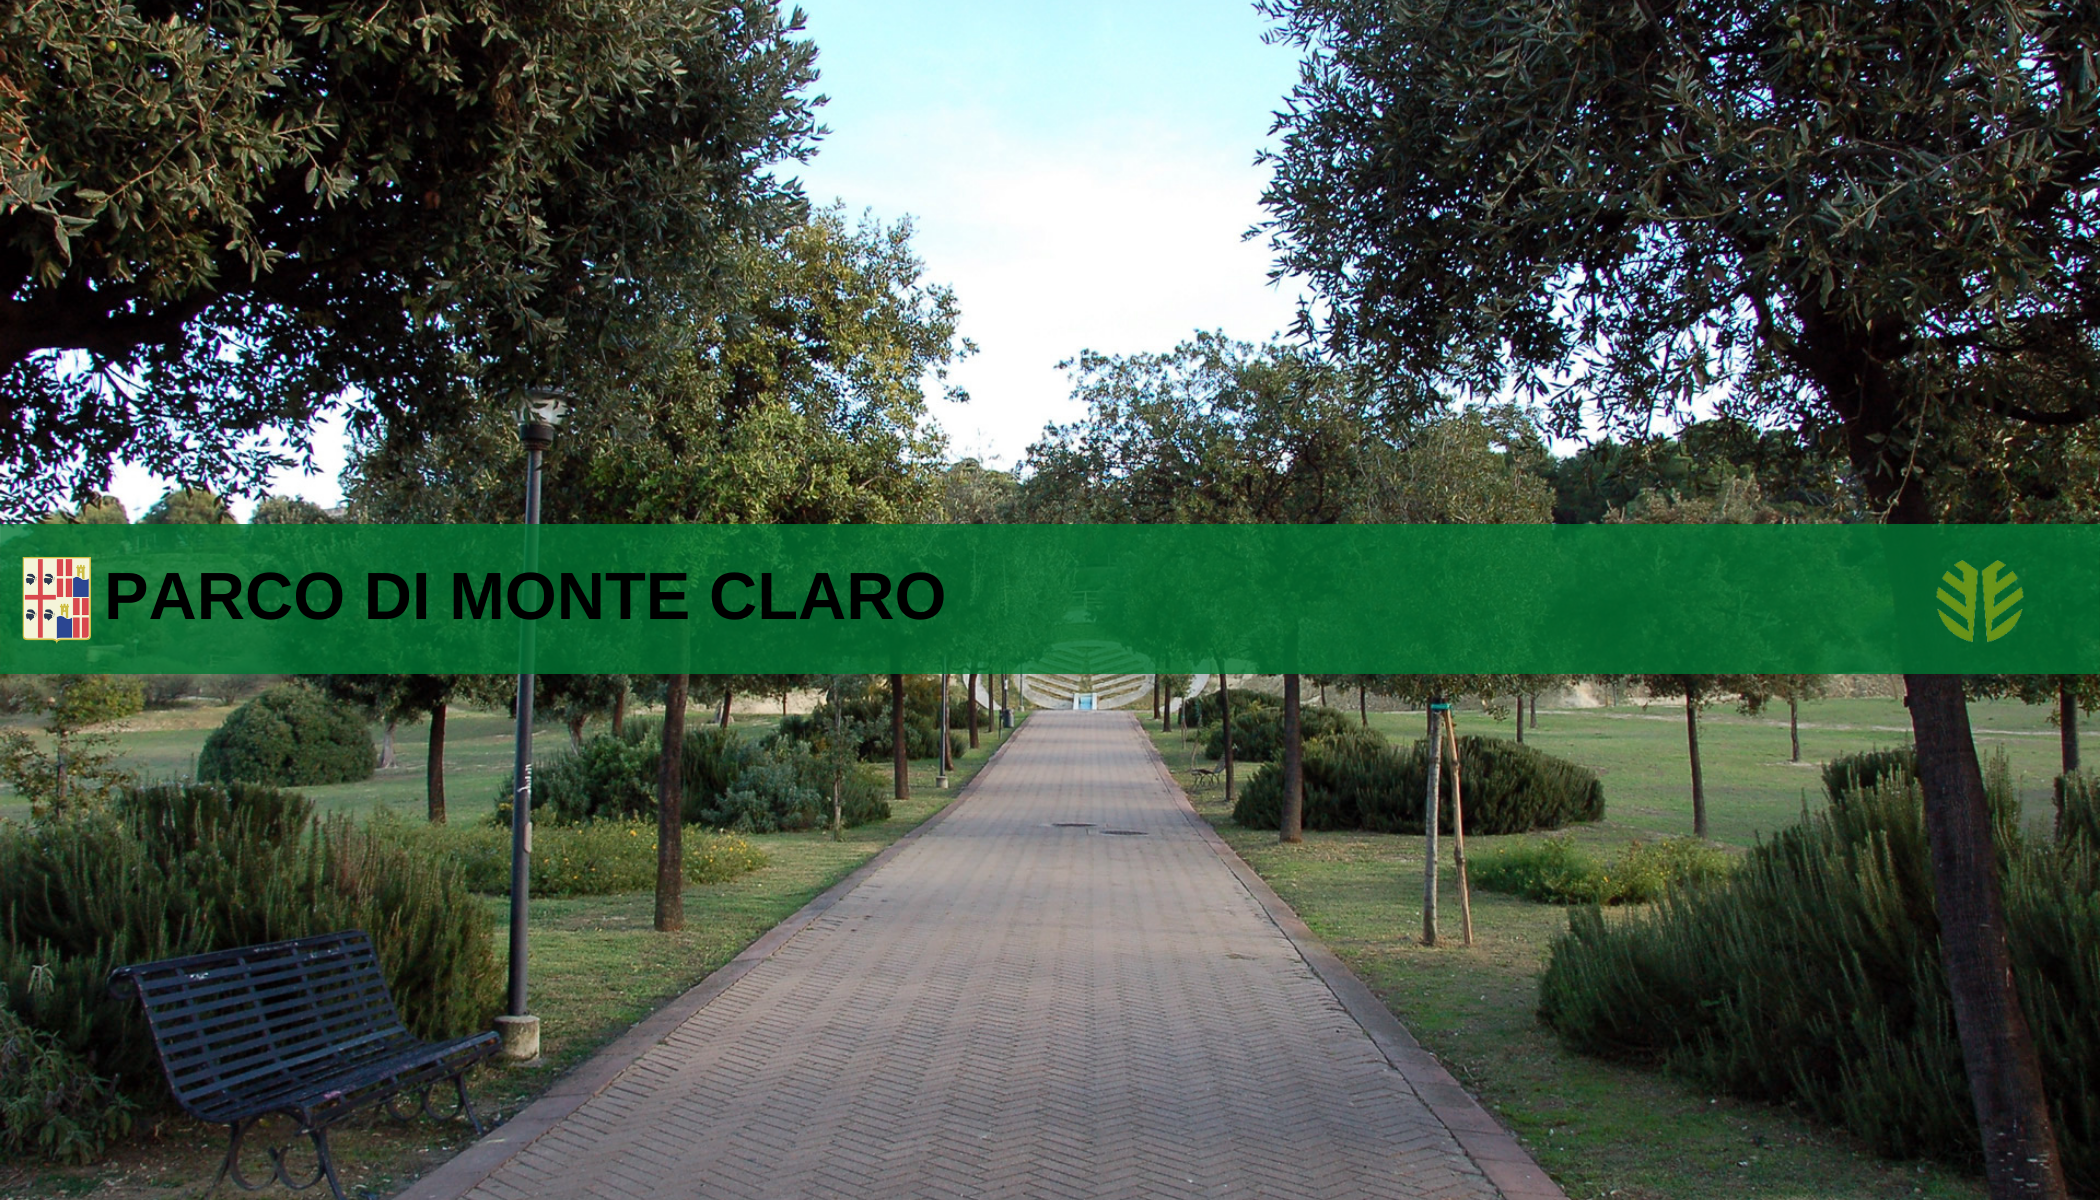 Parco di Monte Claro